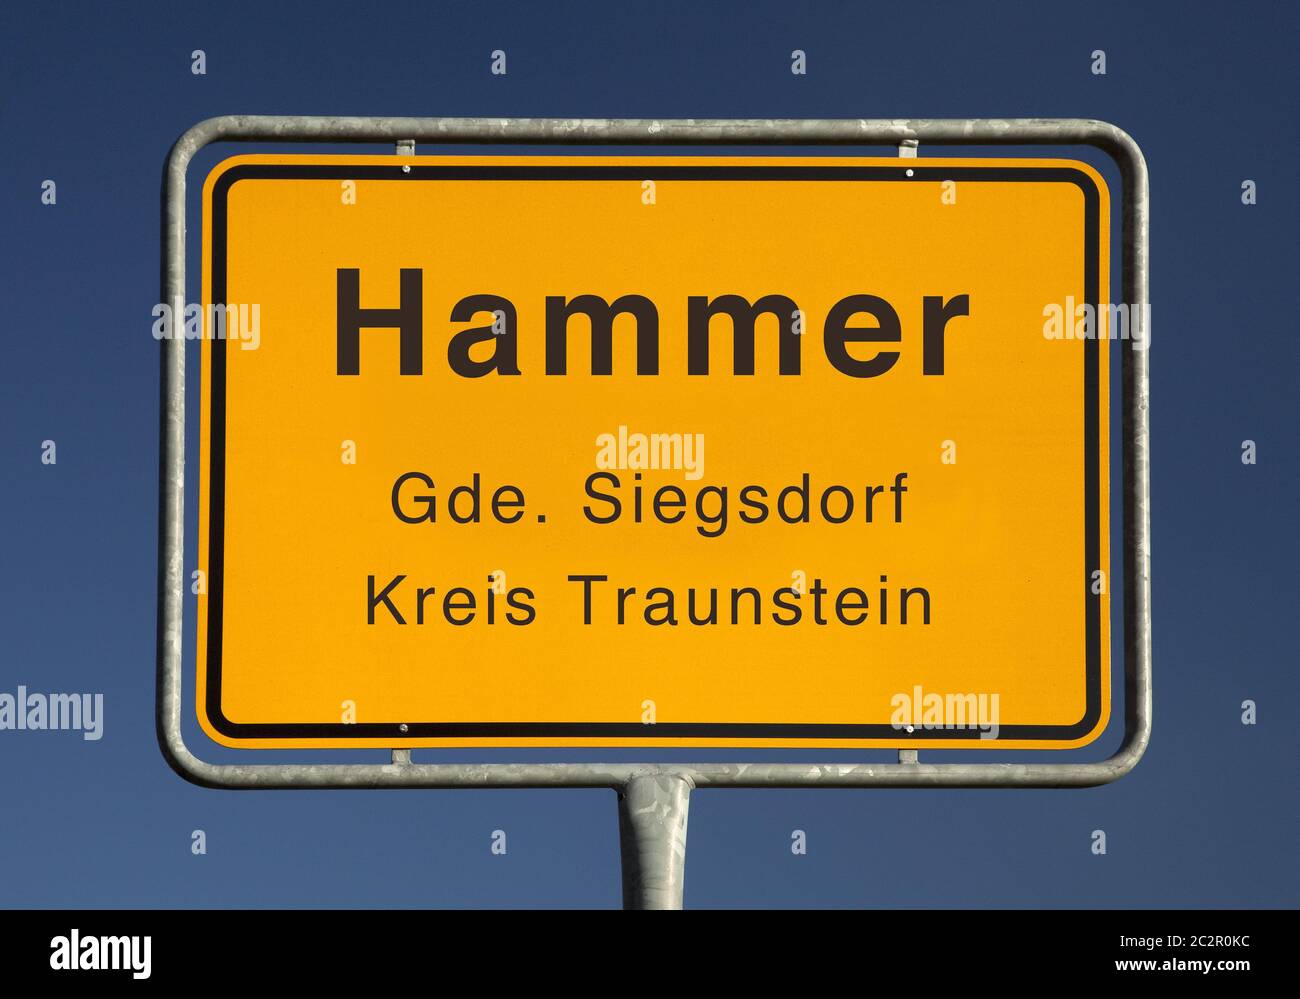 Ortseingangsschild Hammer, ein Ortsteil der Gemeinde Siegsdorf, Kreis  Traunstein, Deutschland Stockfotografie - Alamy